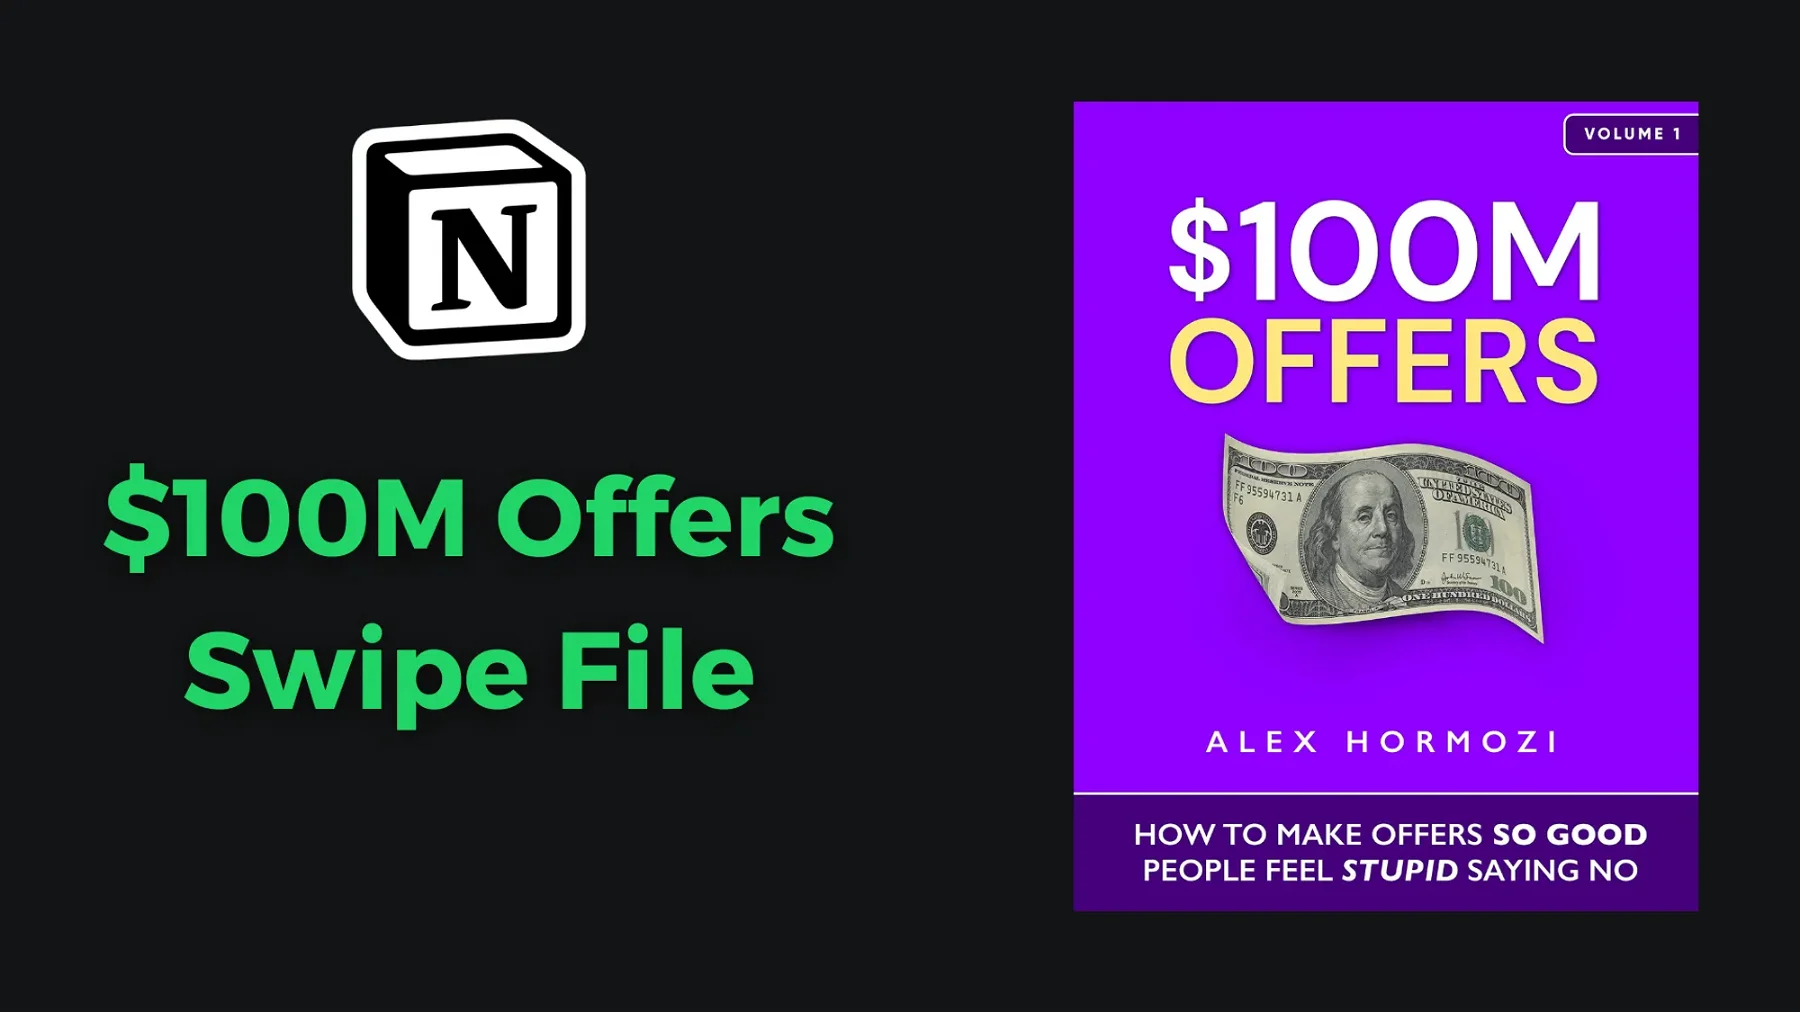 $100M Offers Swipe File